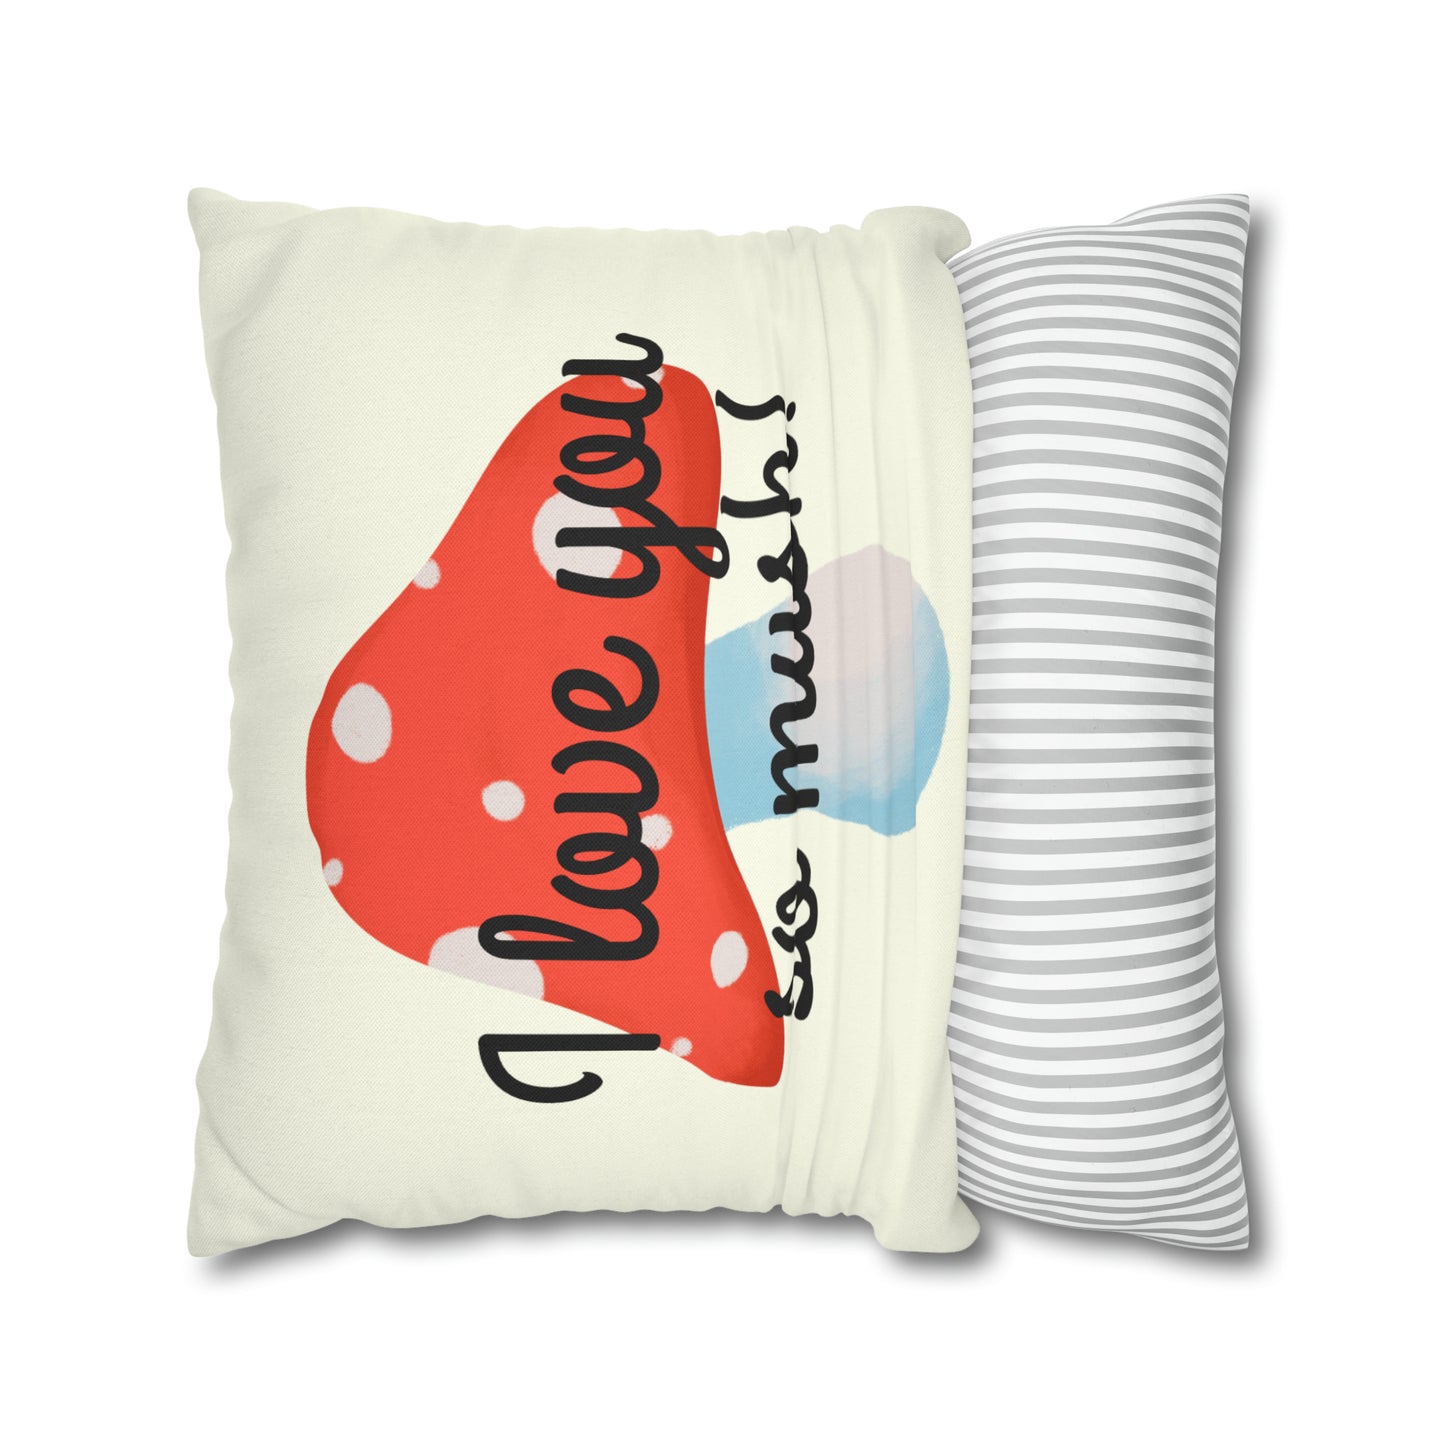 Mushroom Spun Polyester Square Pillowcase, I Love You So Mush Pillowcase